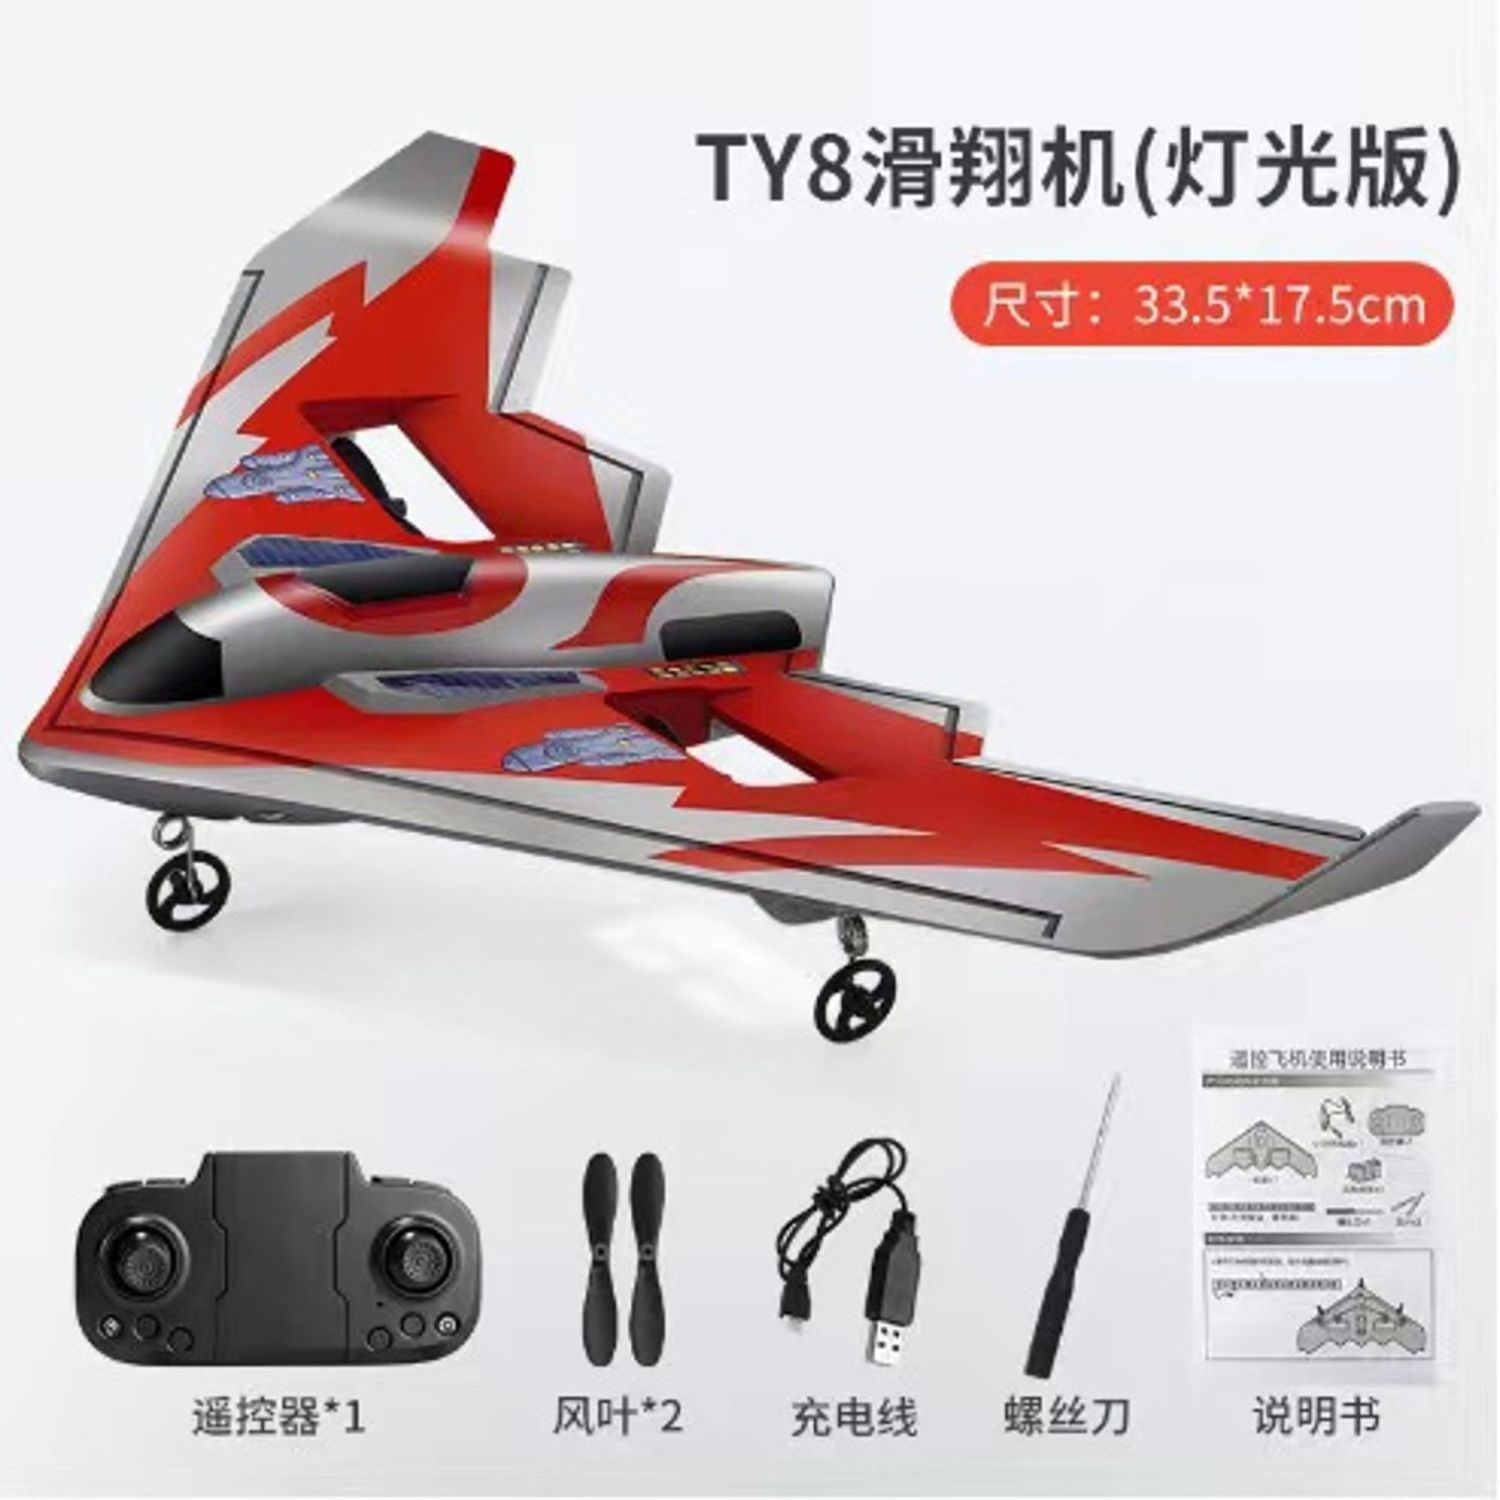 遙控飛機 航空模型 好玩遙控飛機 三角翼戰斗機 玩具 男孩兒童滑翔耐摔充電固定翼航模